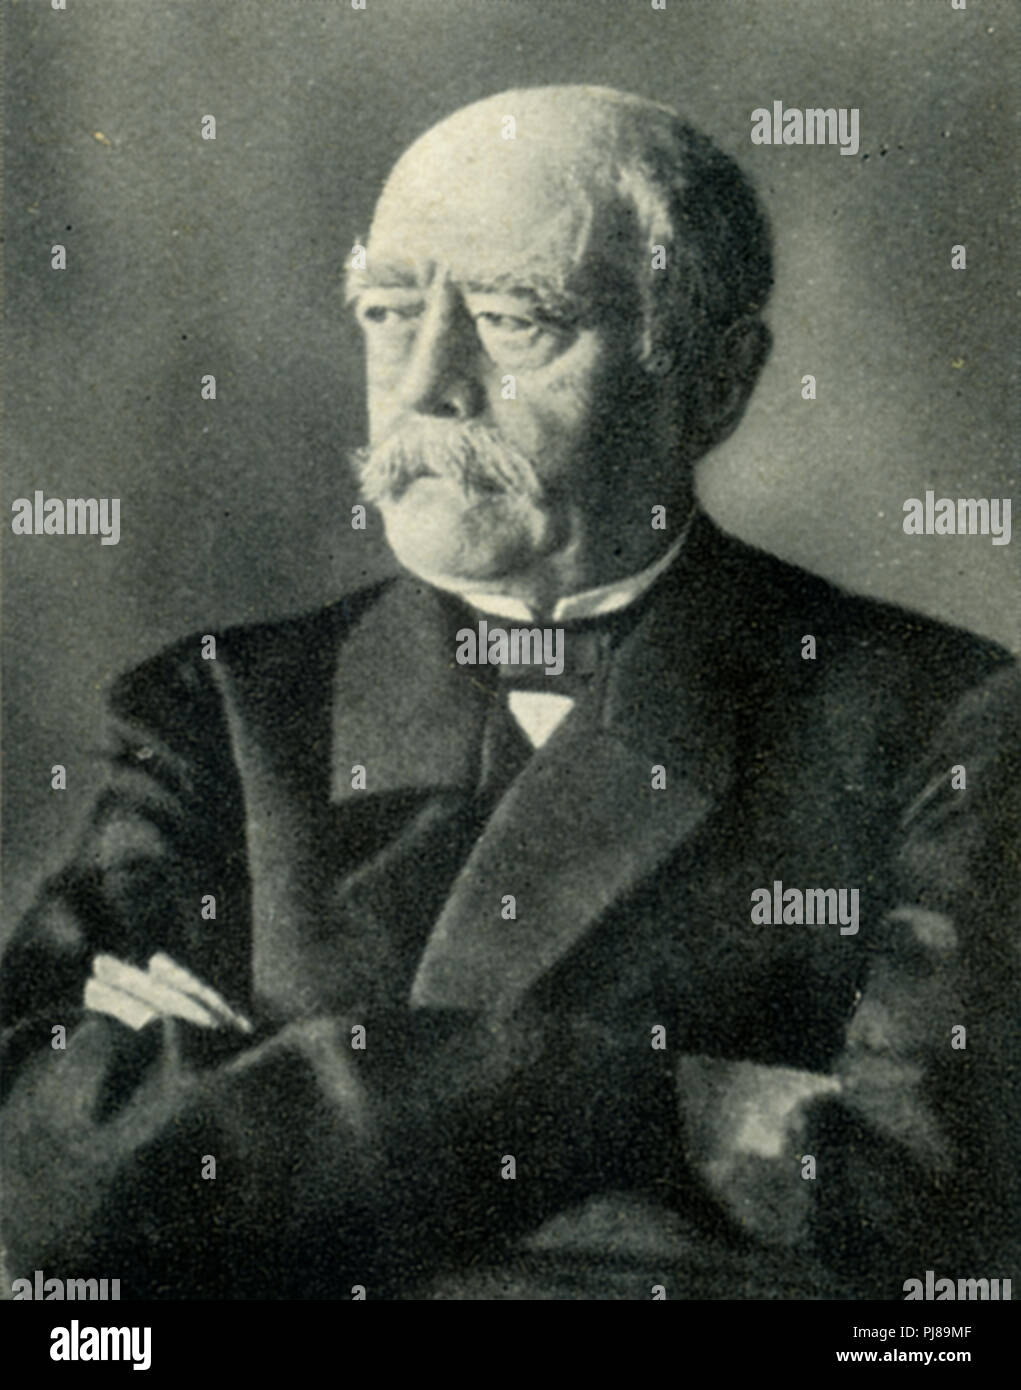 Bismarck, Otto von (1815-1898), German politician and statesman, Stock Photo